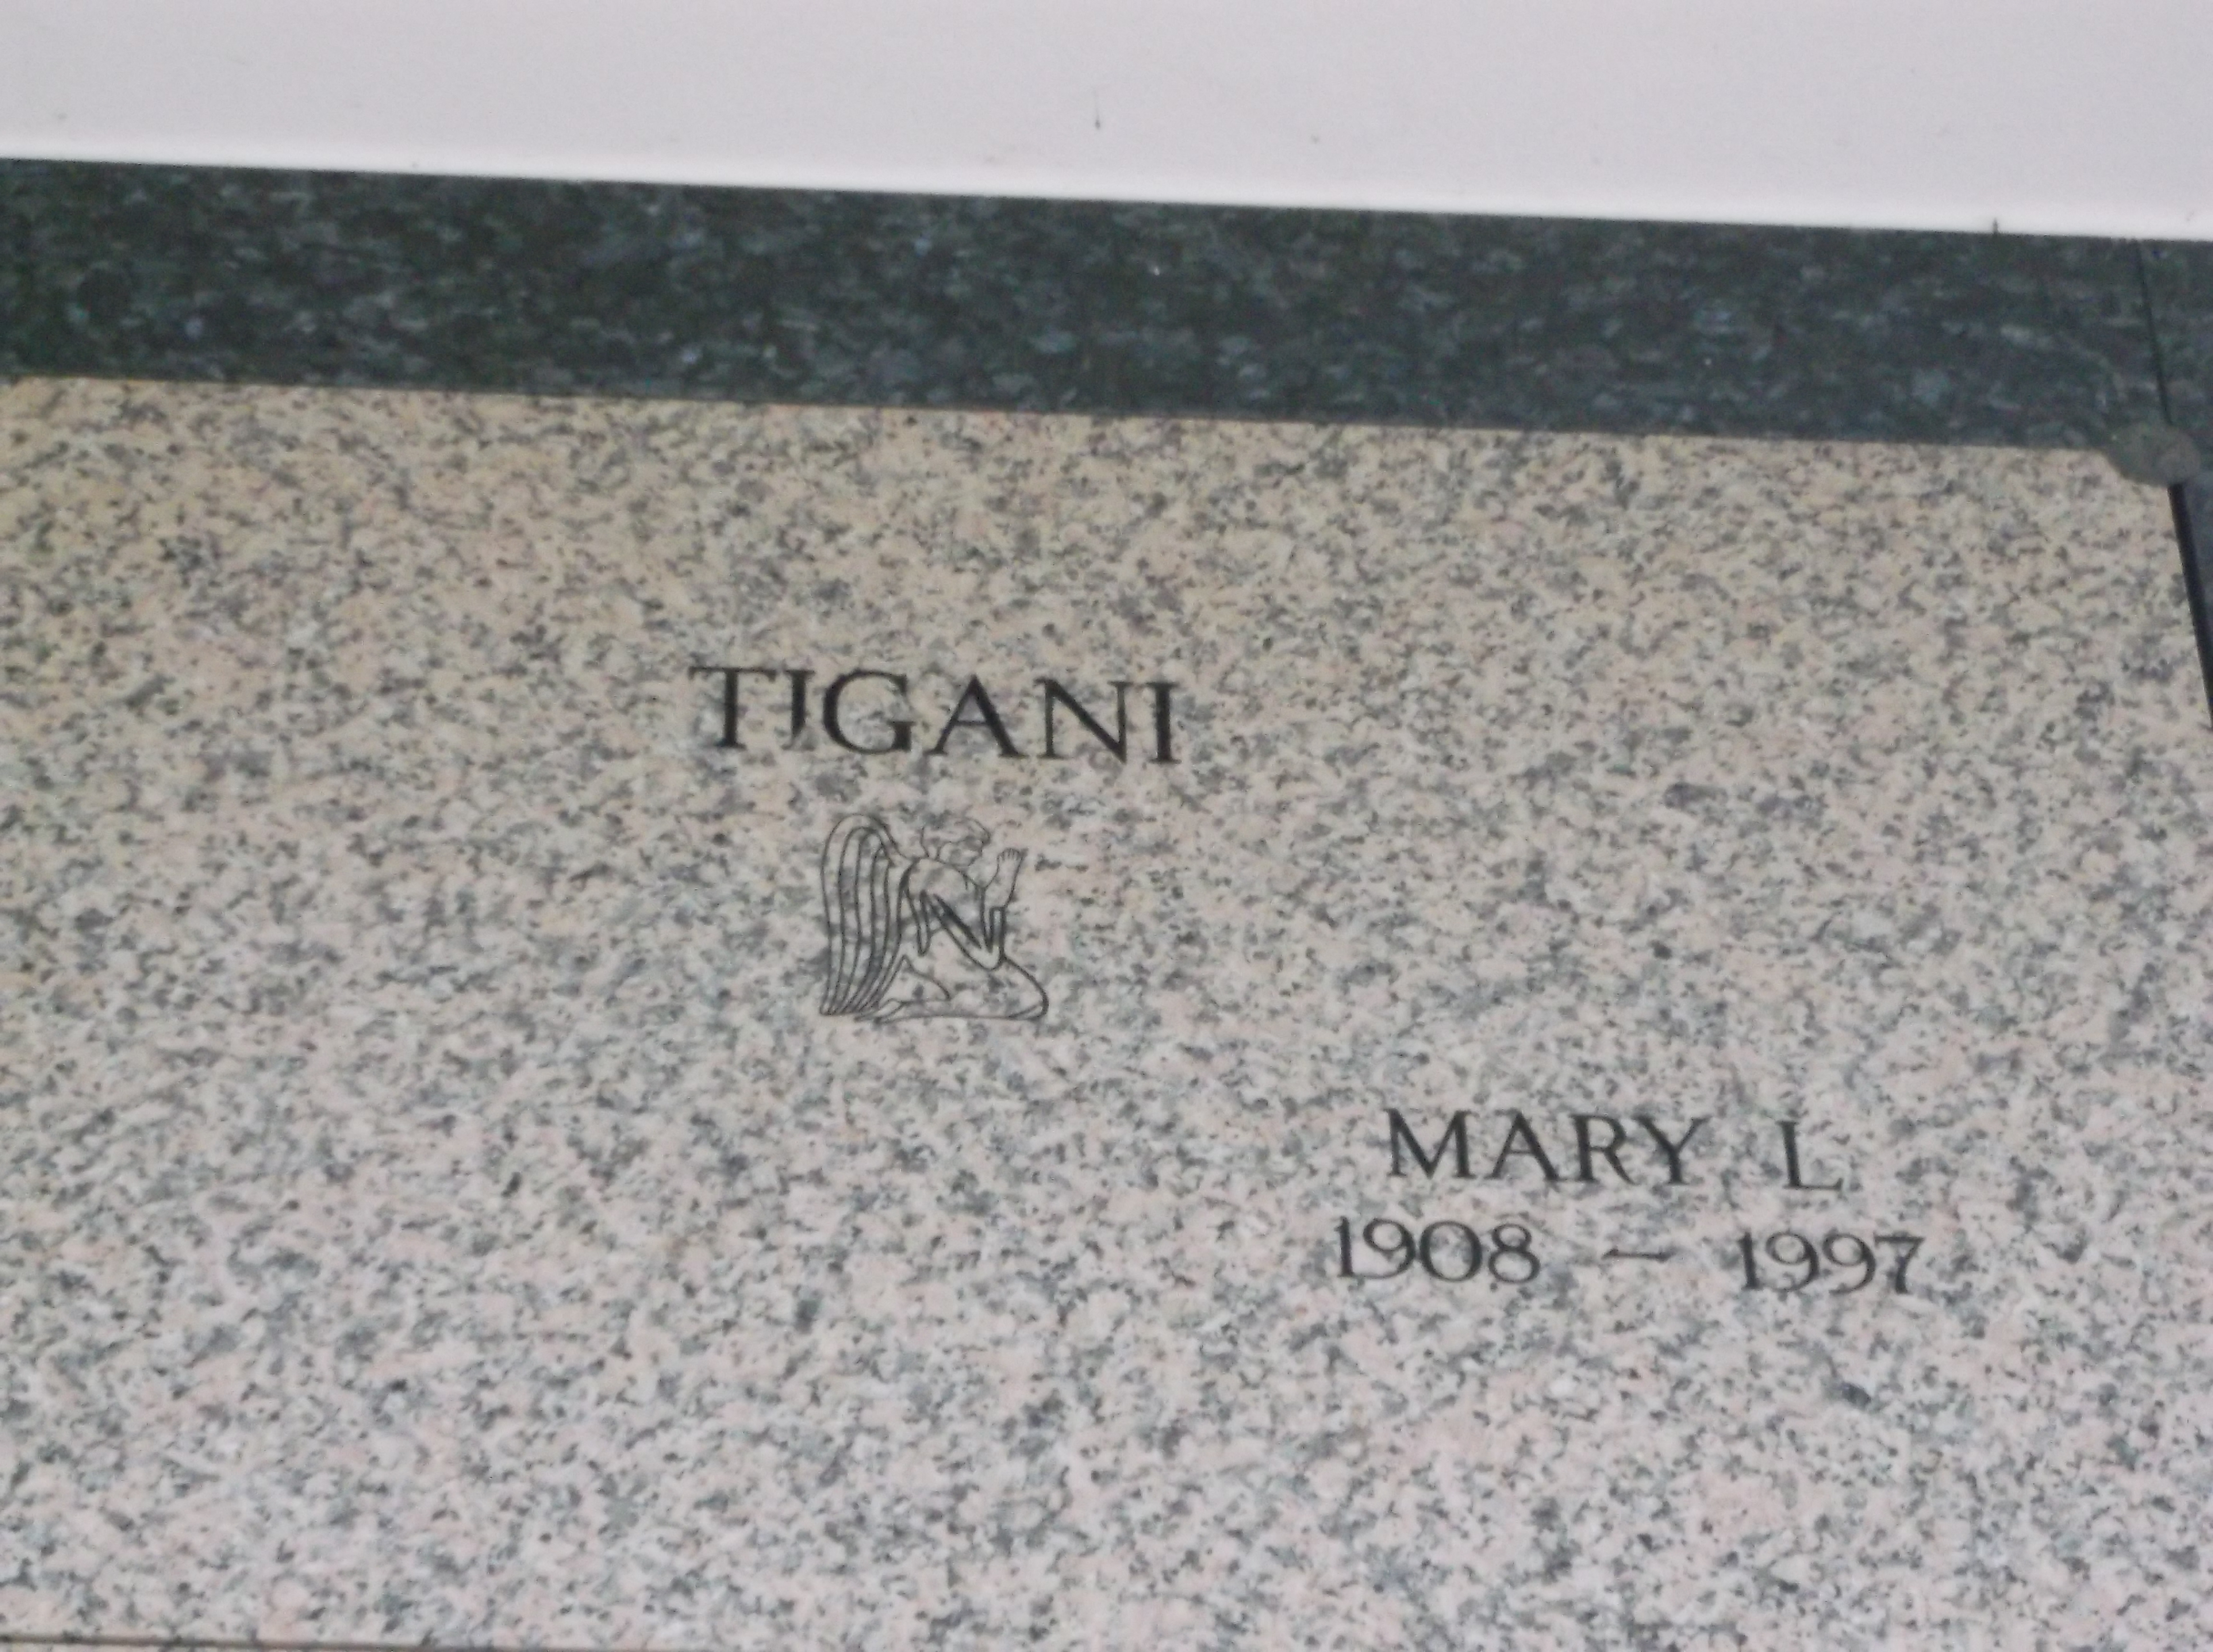 Mary L Tigani